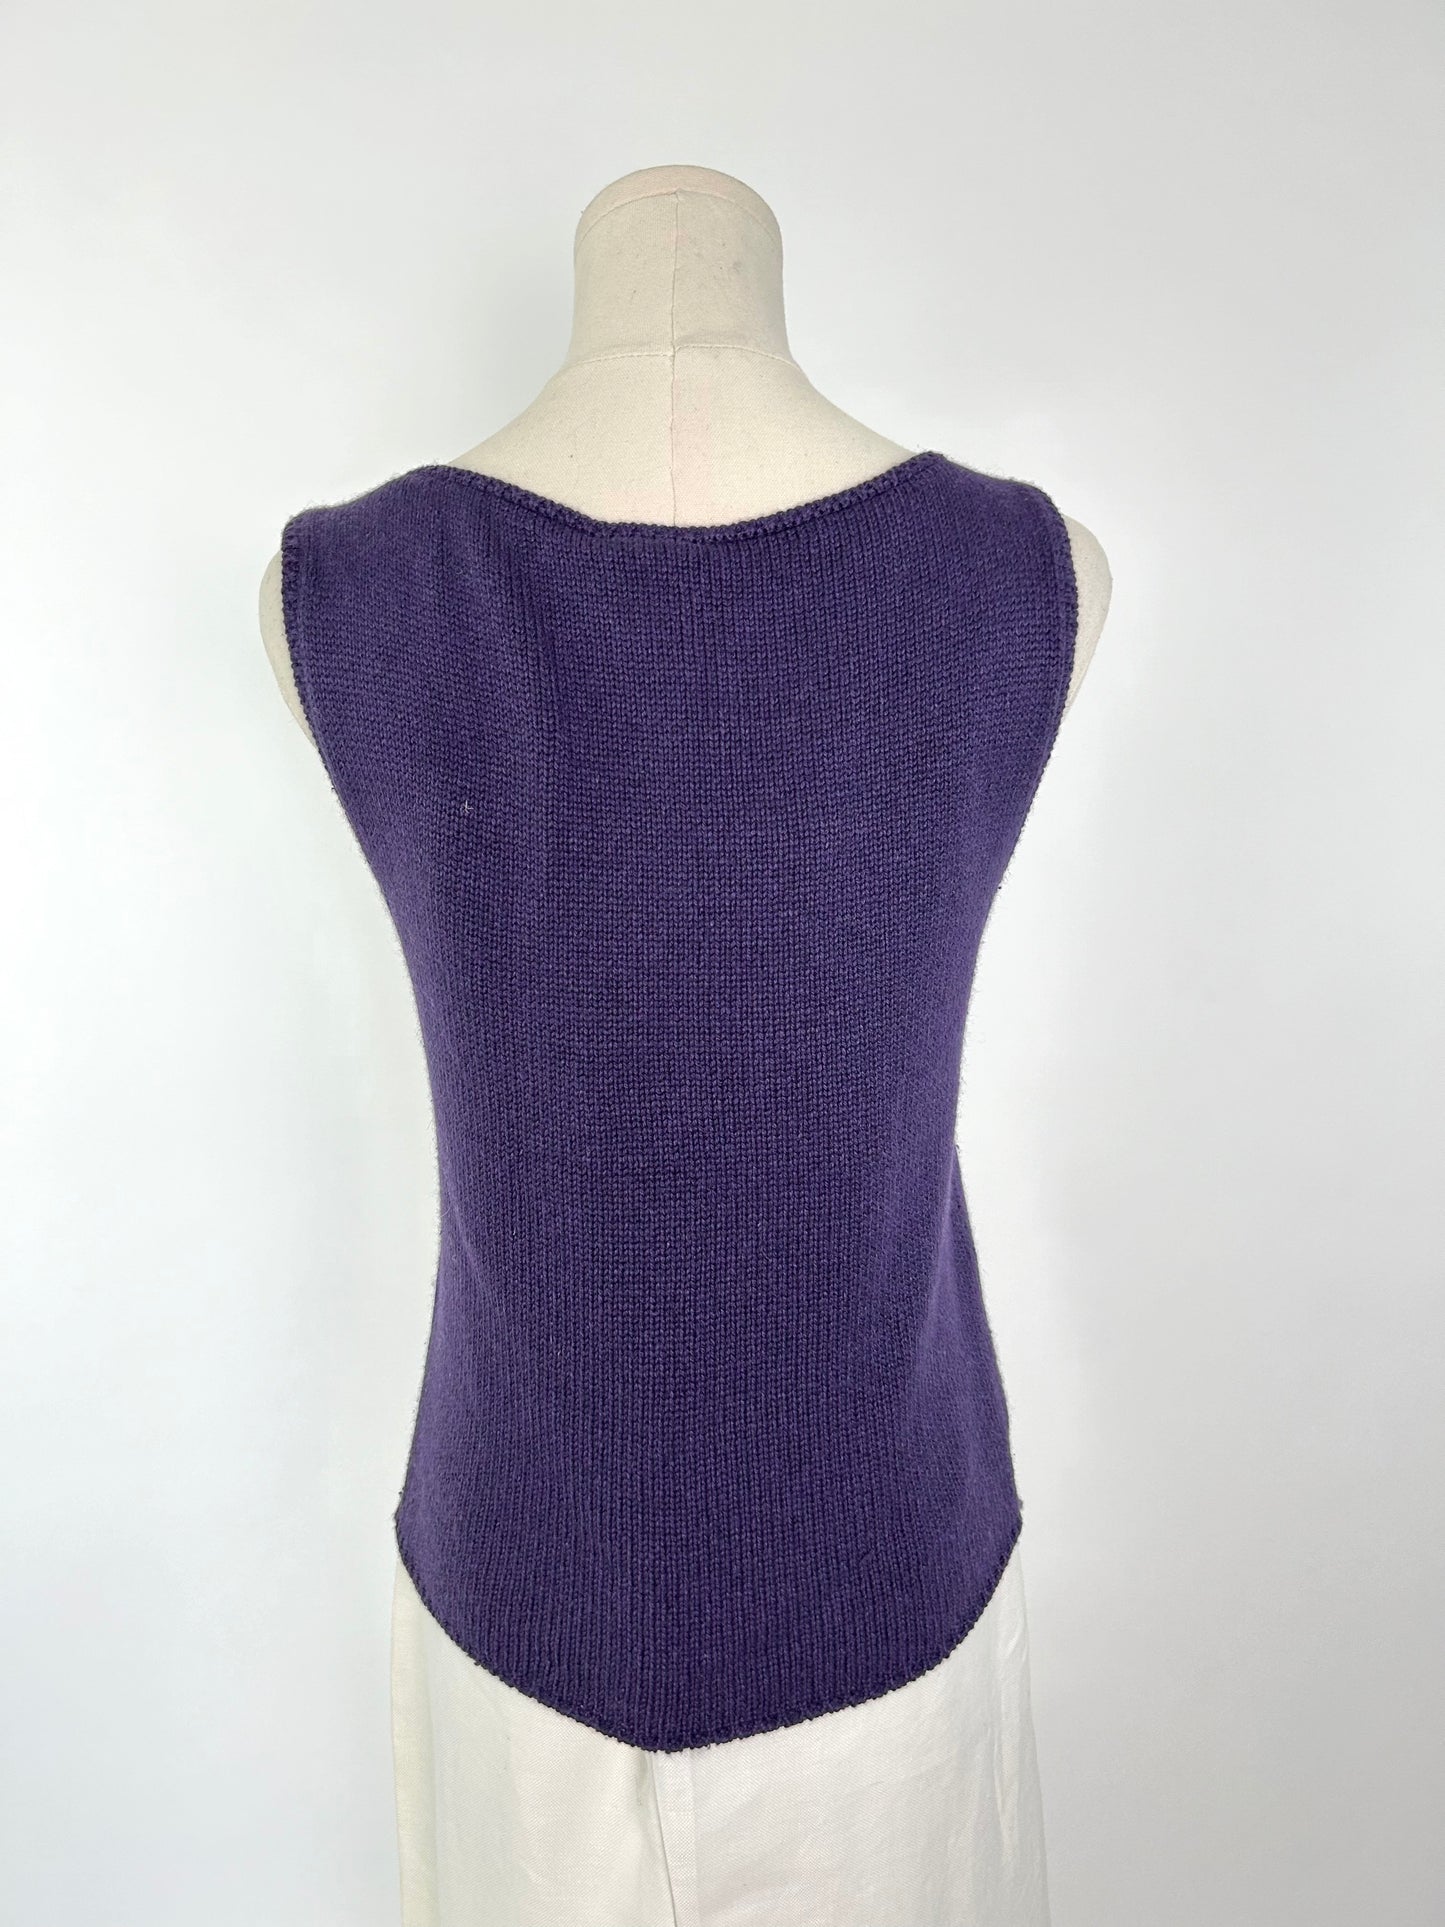 Chanel Purple Sweater Tank Top